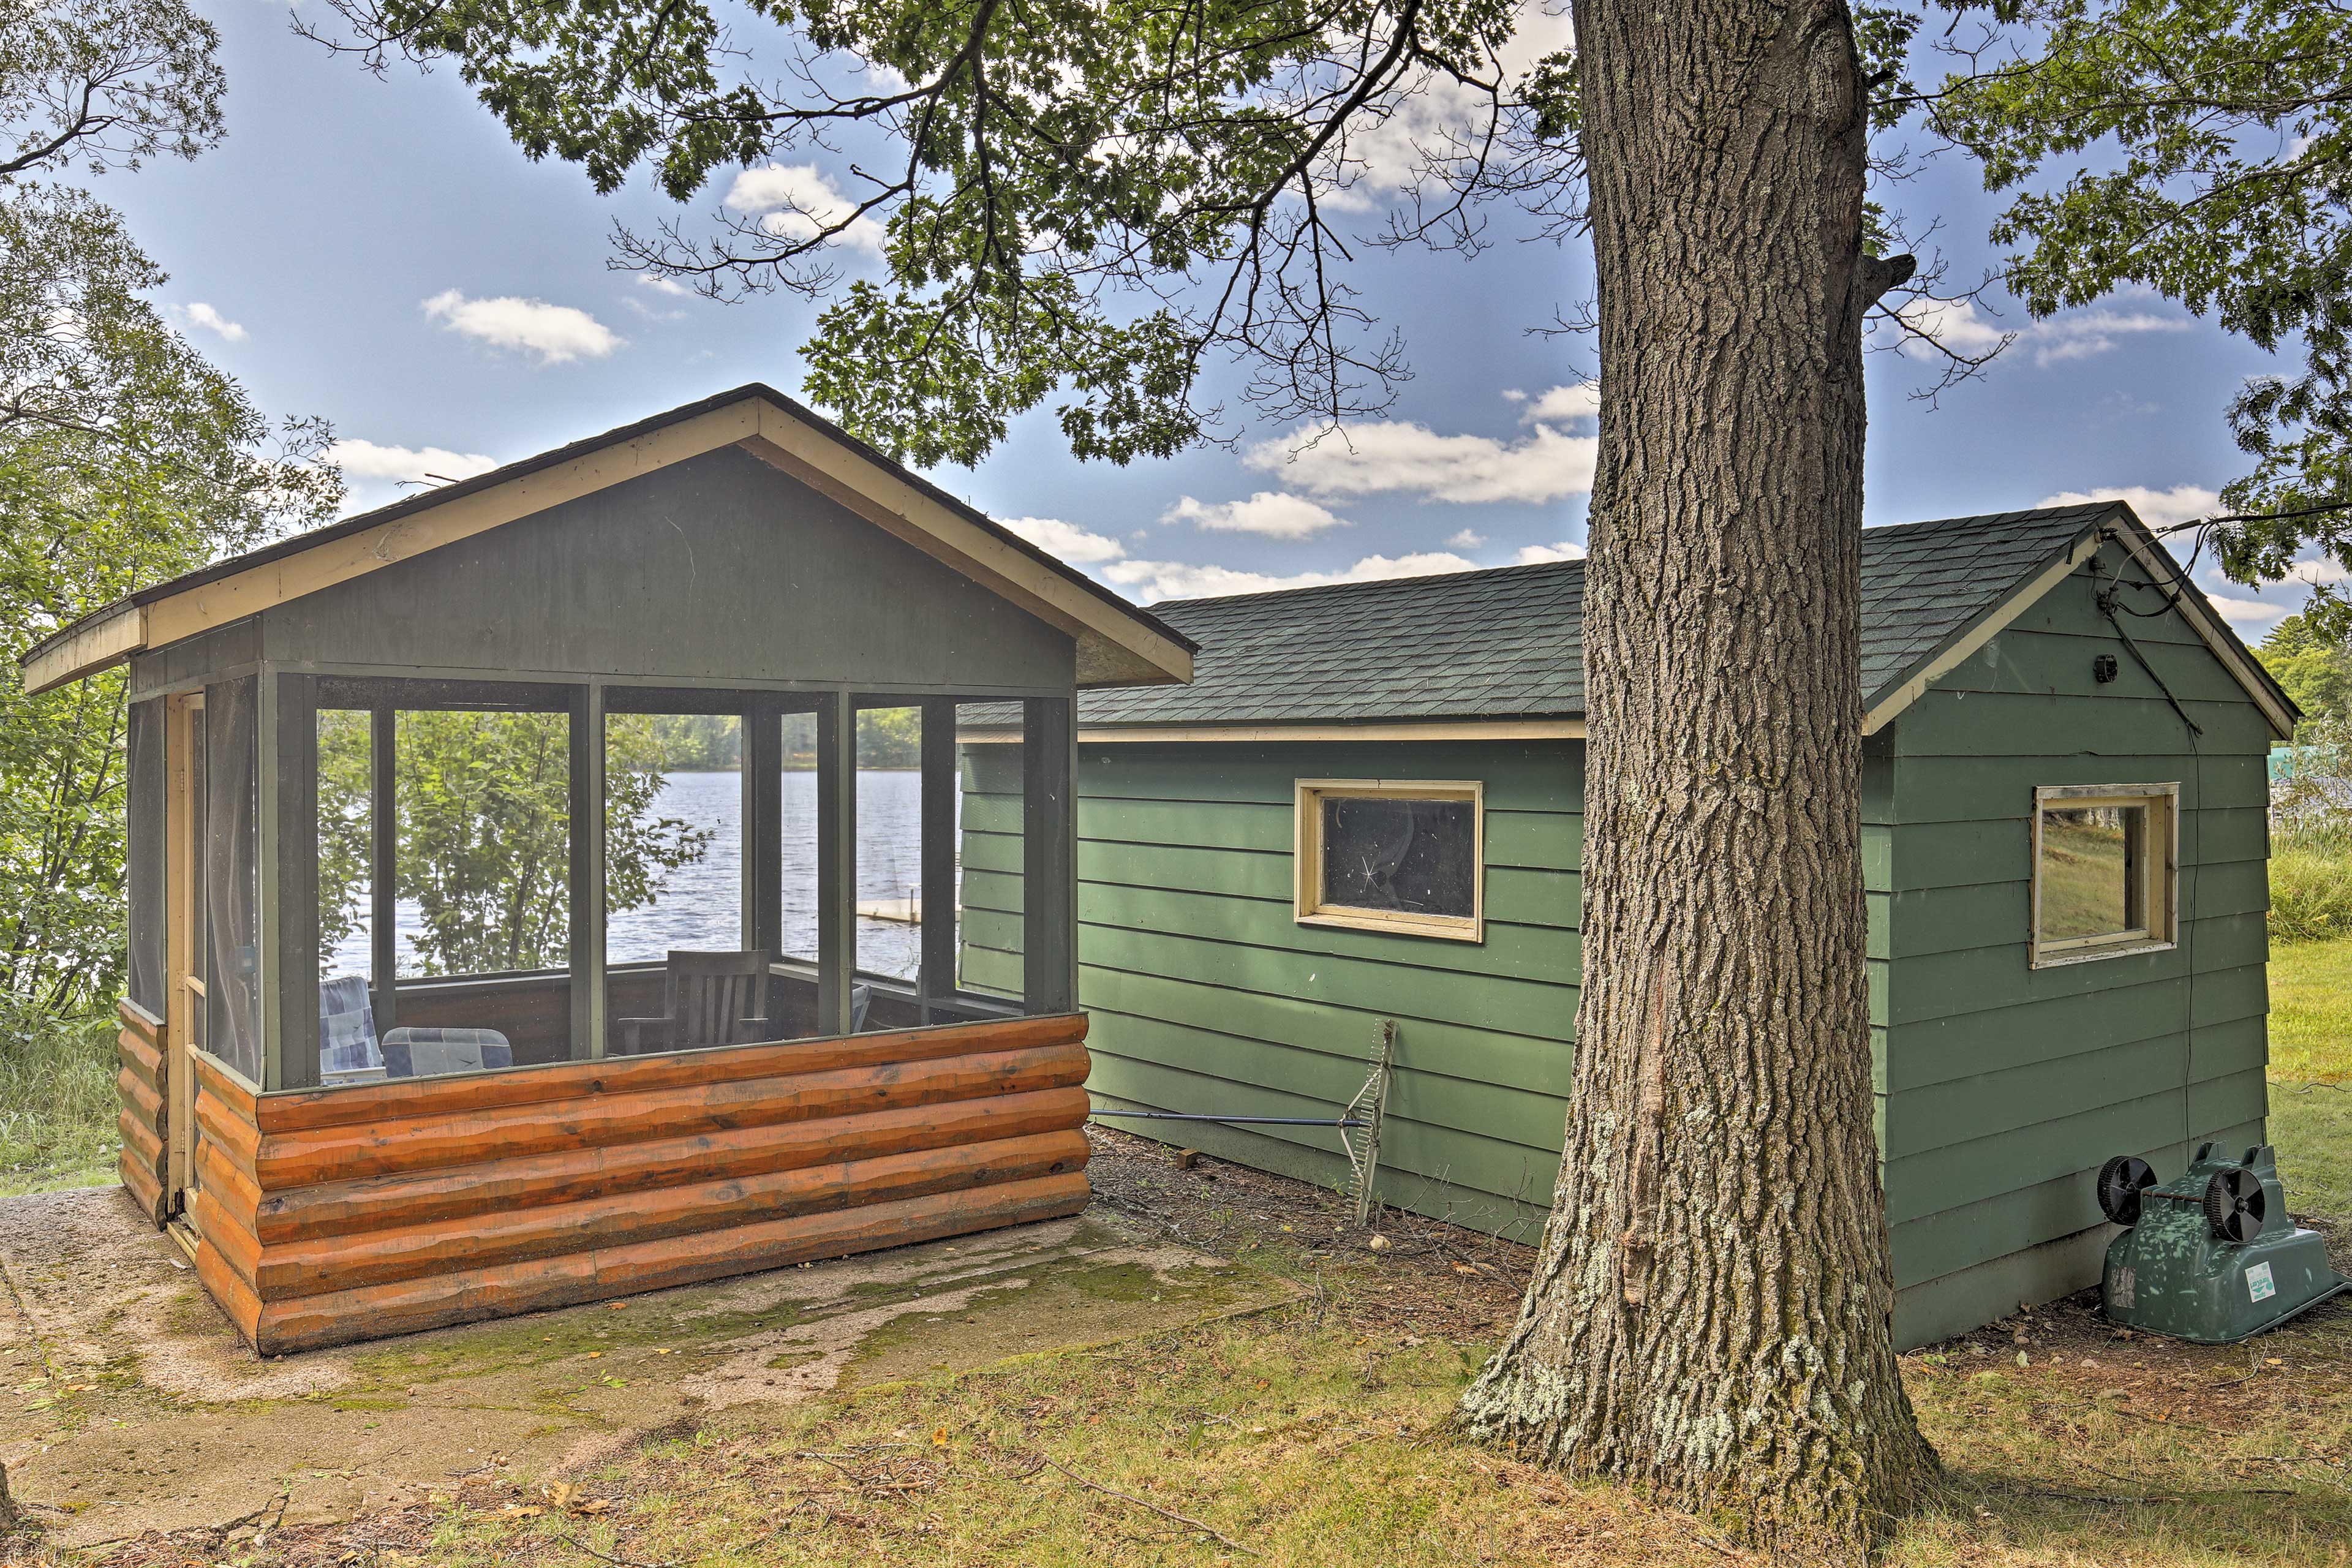 Spider Lake Cabin: Boathouse, Canoe, Deck & Sauna!